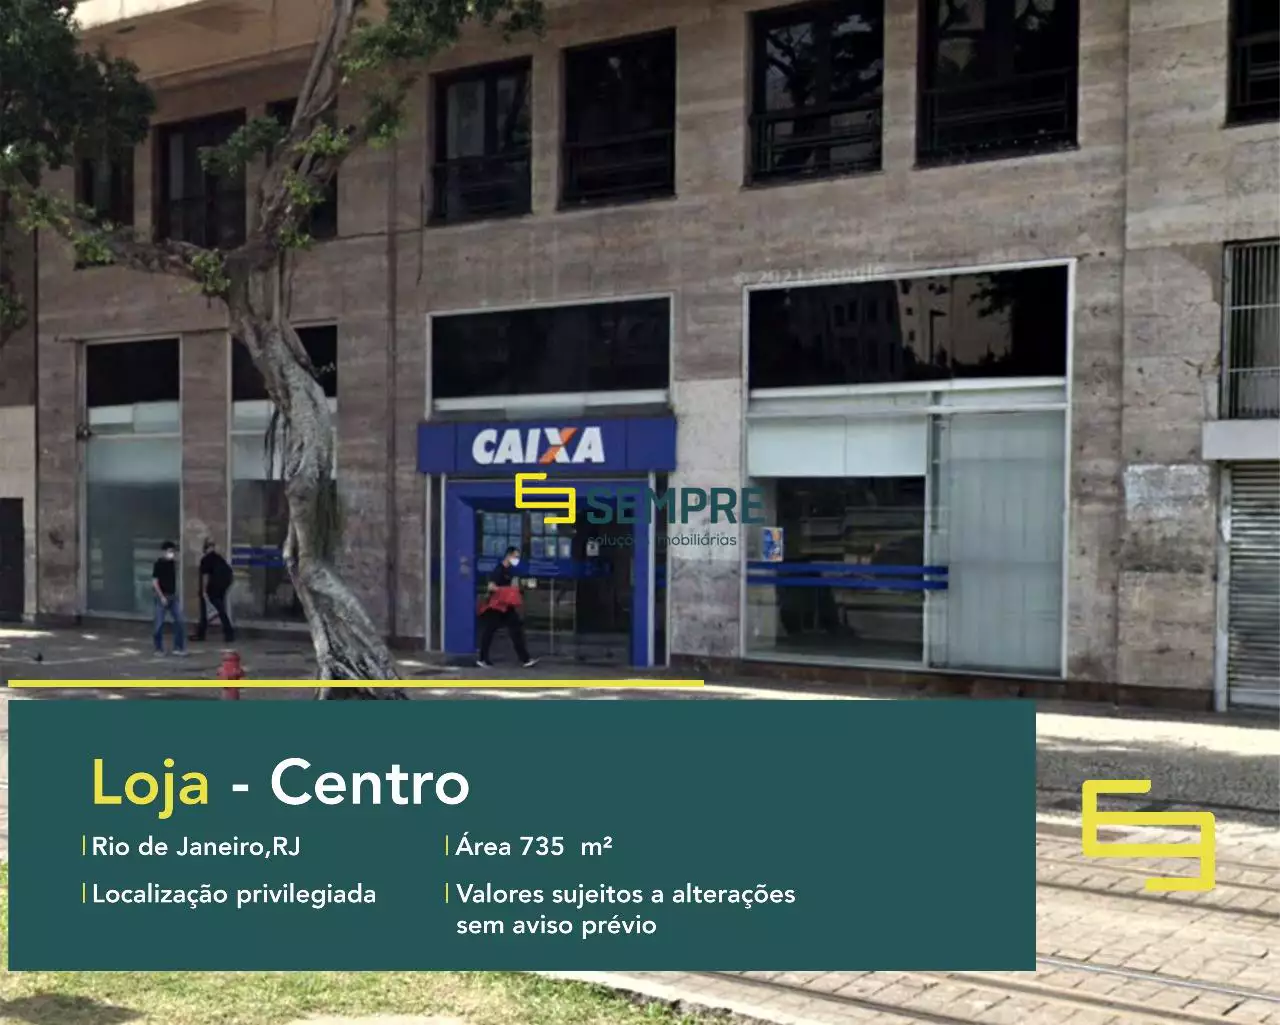 Loja para vender no Centro do RJ, em excelente localização. O estabelecimento comercial conta com área de 735 m².